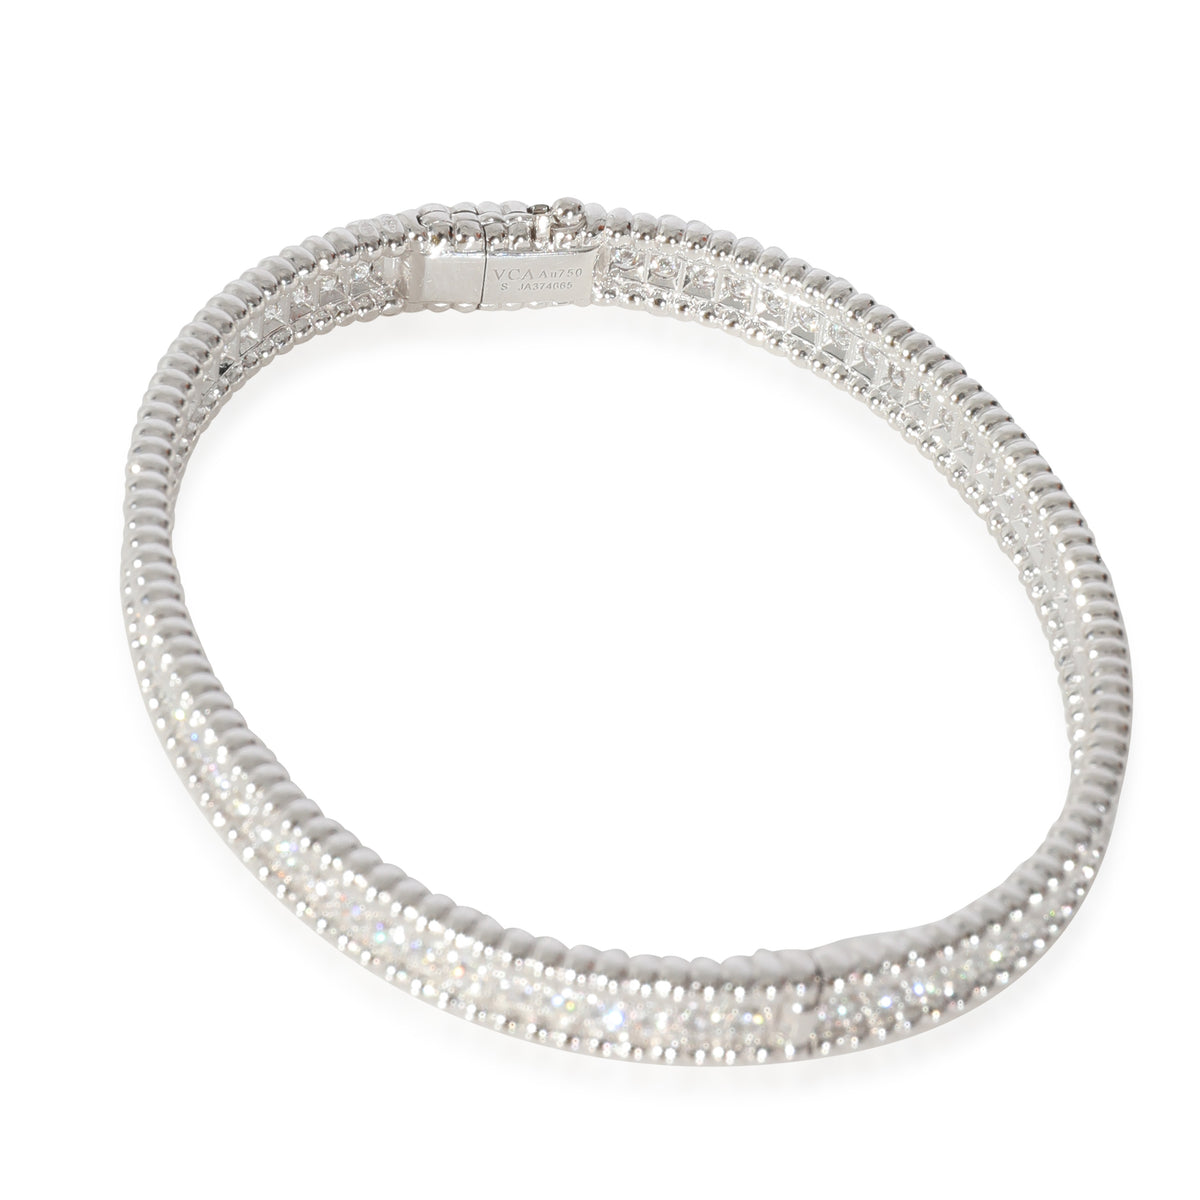 Van Cleef & Arpels Perlee Diamond Bracelet in 18K White Gold 2.16 CTW